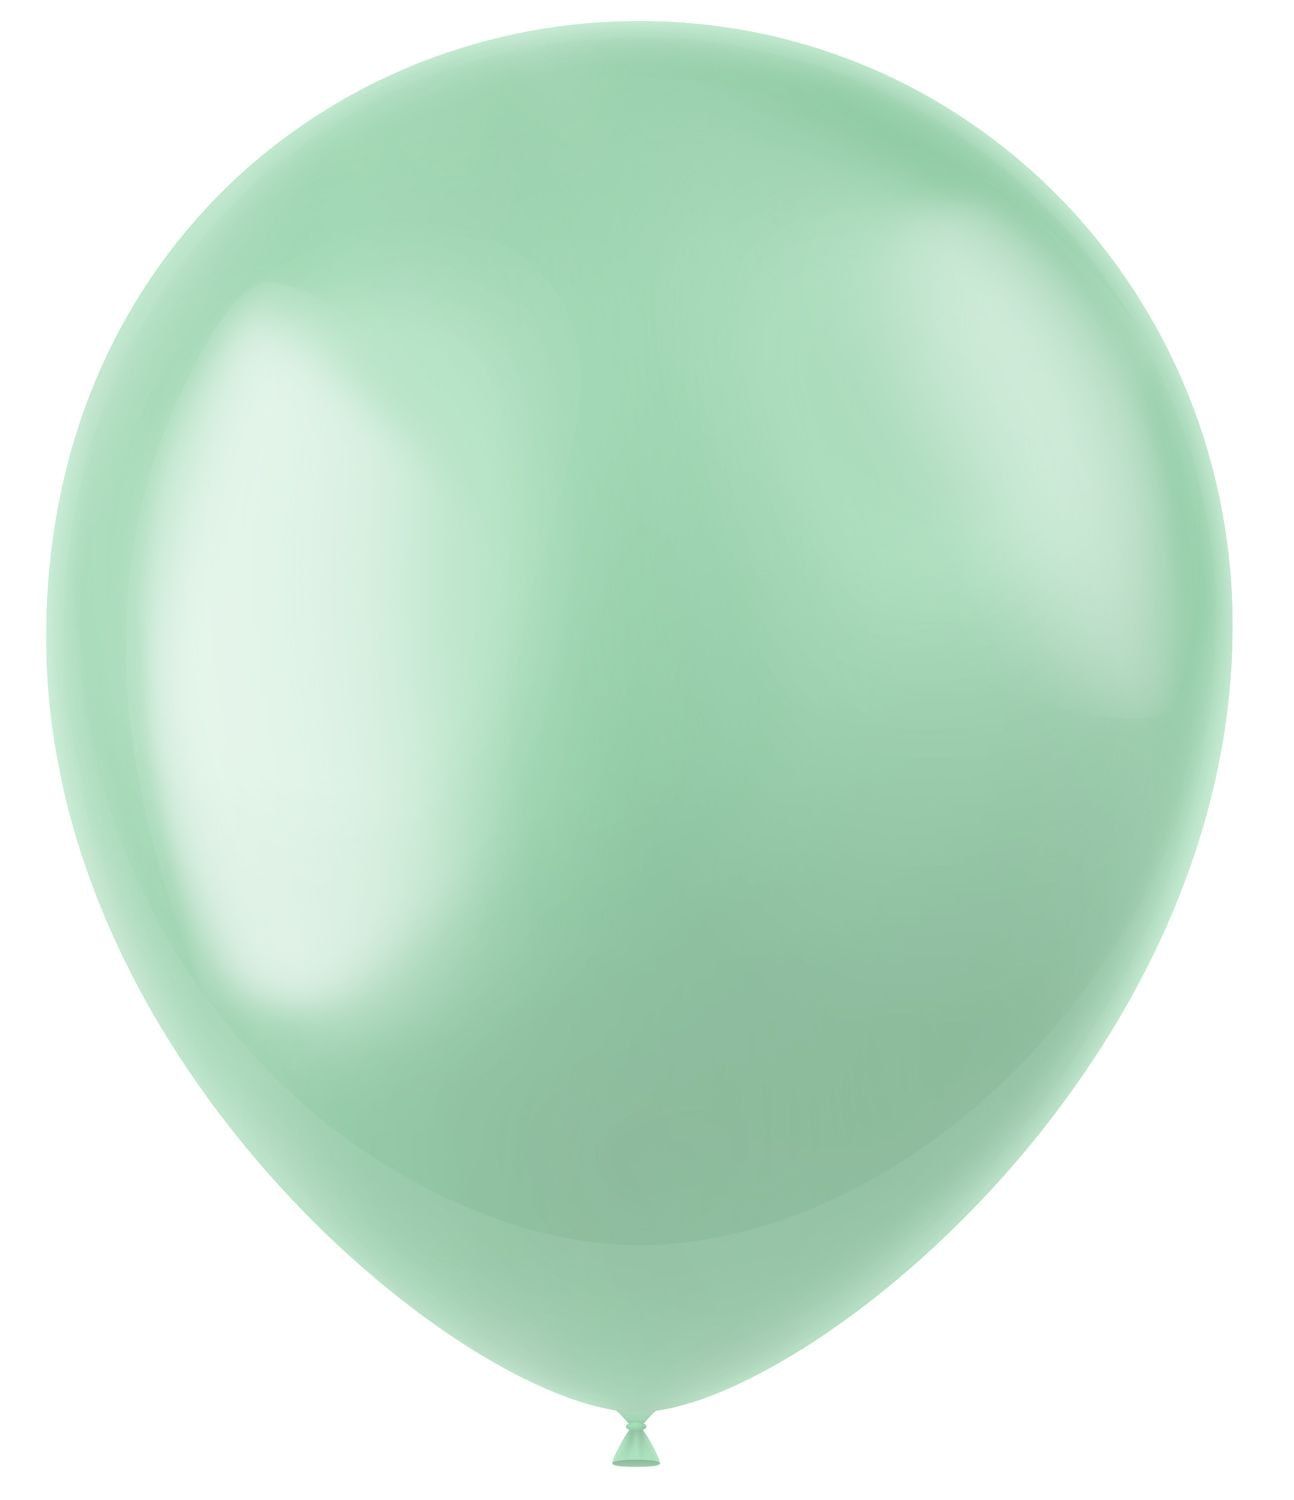 Minty groene metallic ballonnen 50 stuks